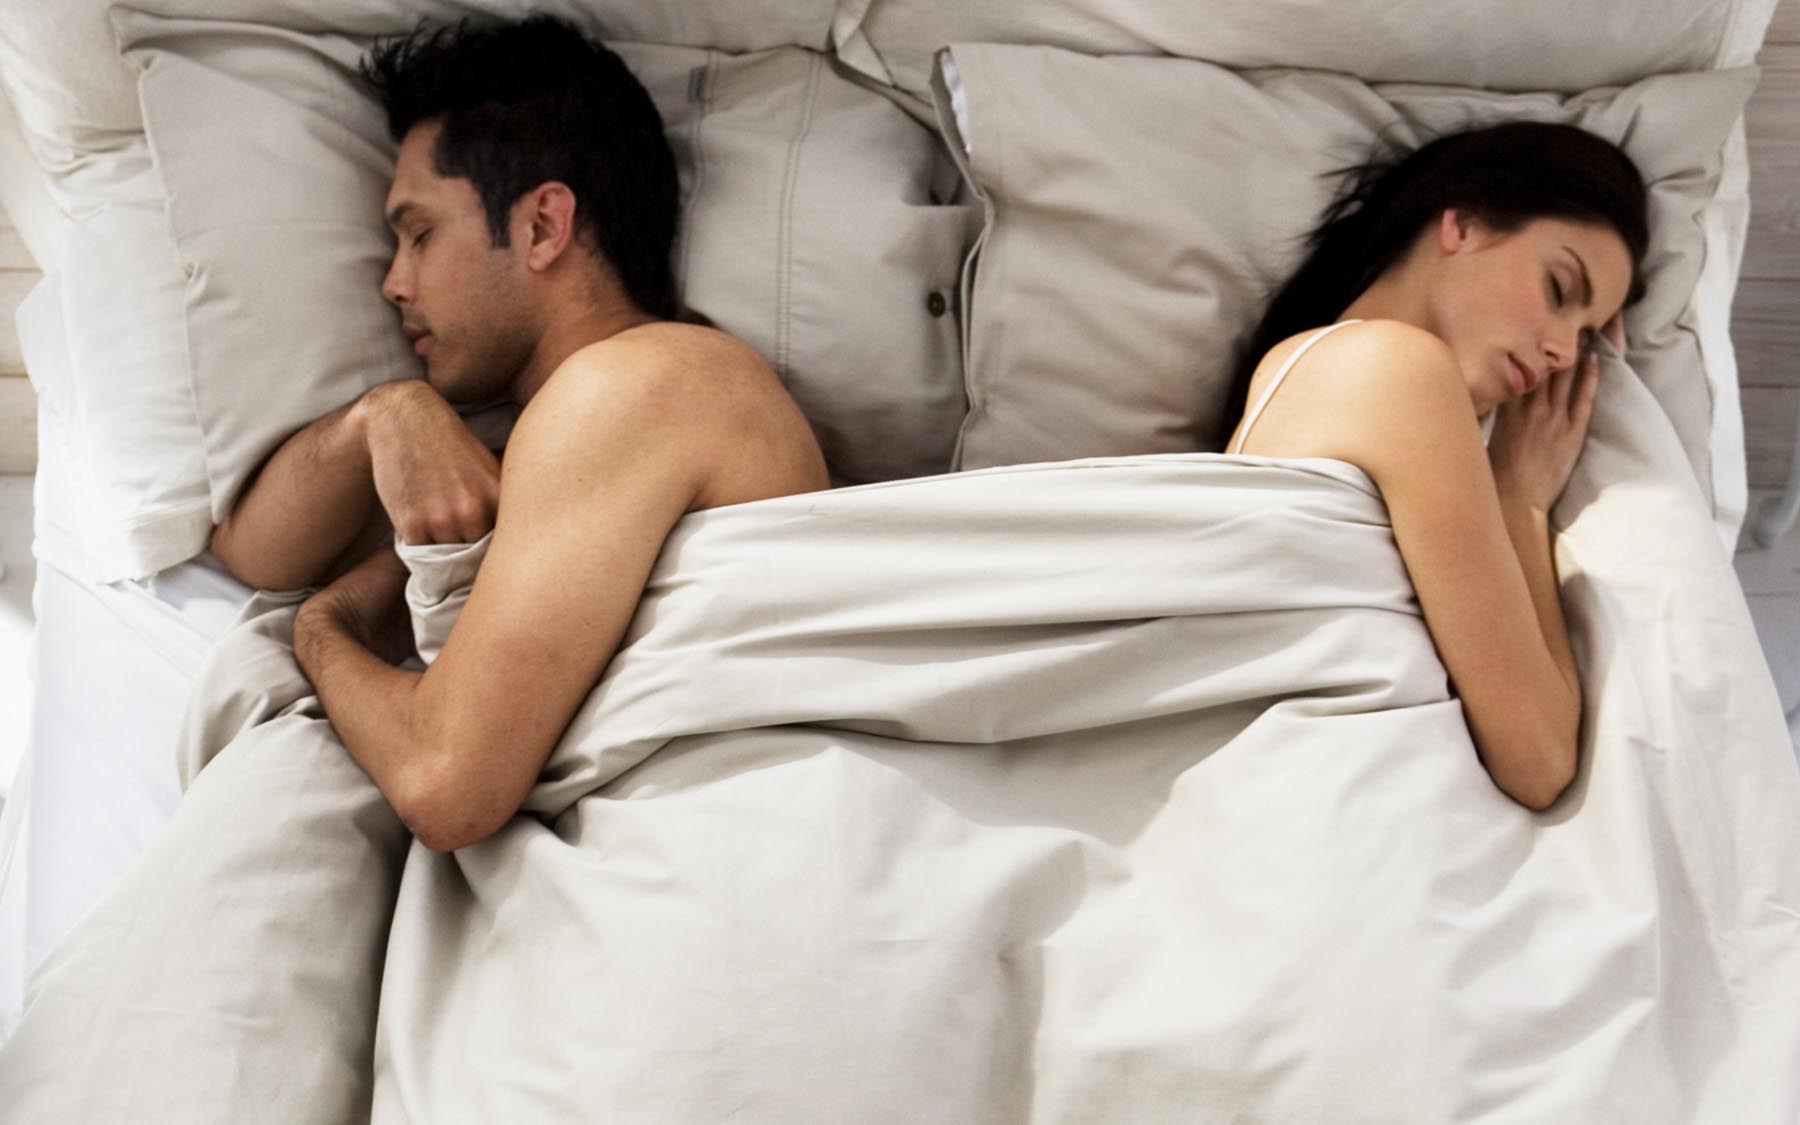 Что больше всего нравится мужчинам в близости. Мужчина и женщина в постели. Мужчина и женщина под одеялом. Парень отвернулся в постели. Мужчина и женщина порознь.